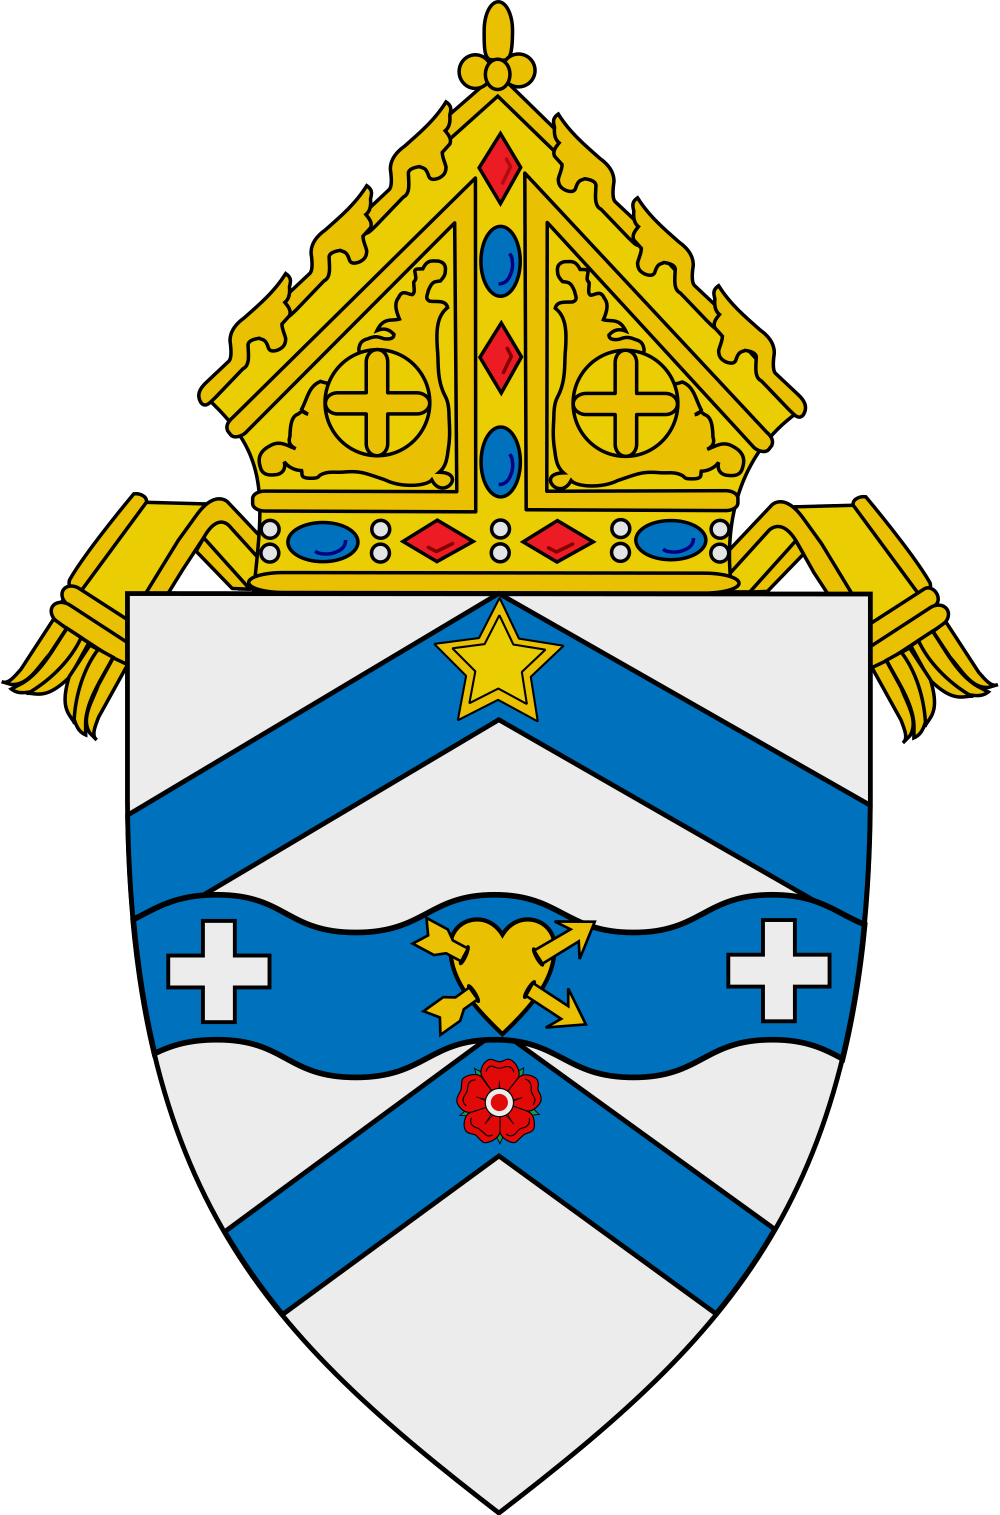 logo-of-diocese-of-austin-gi-o-x-c-c-th-nh-t-o-vi-t-nam